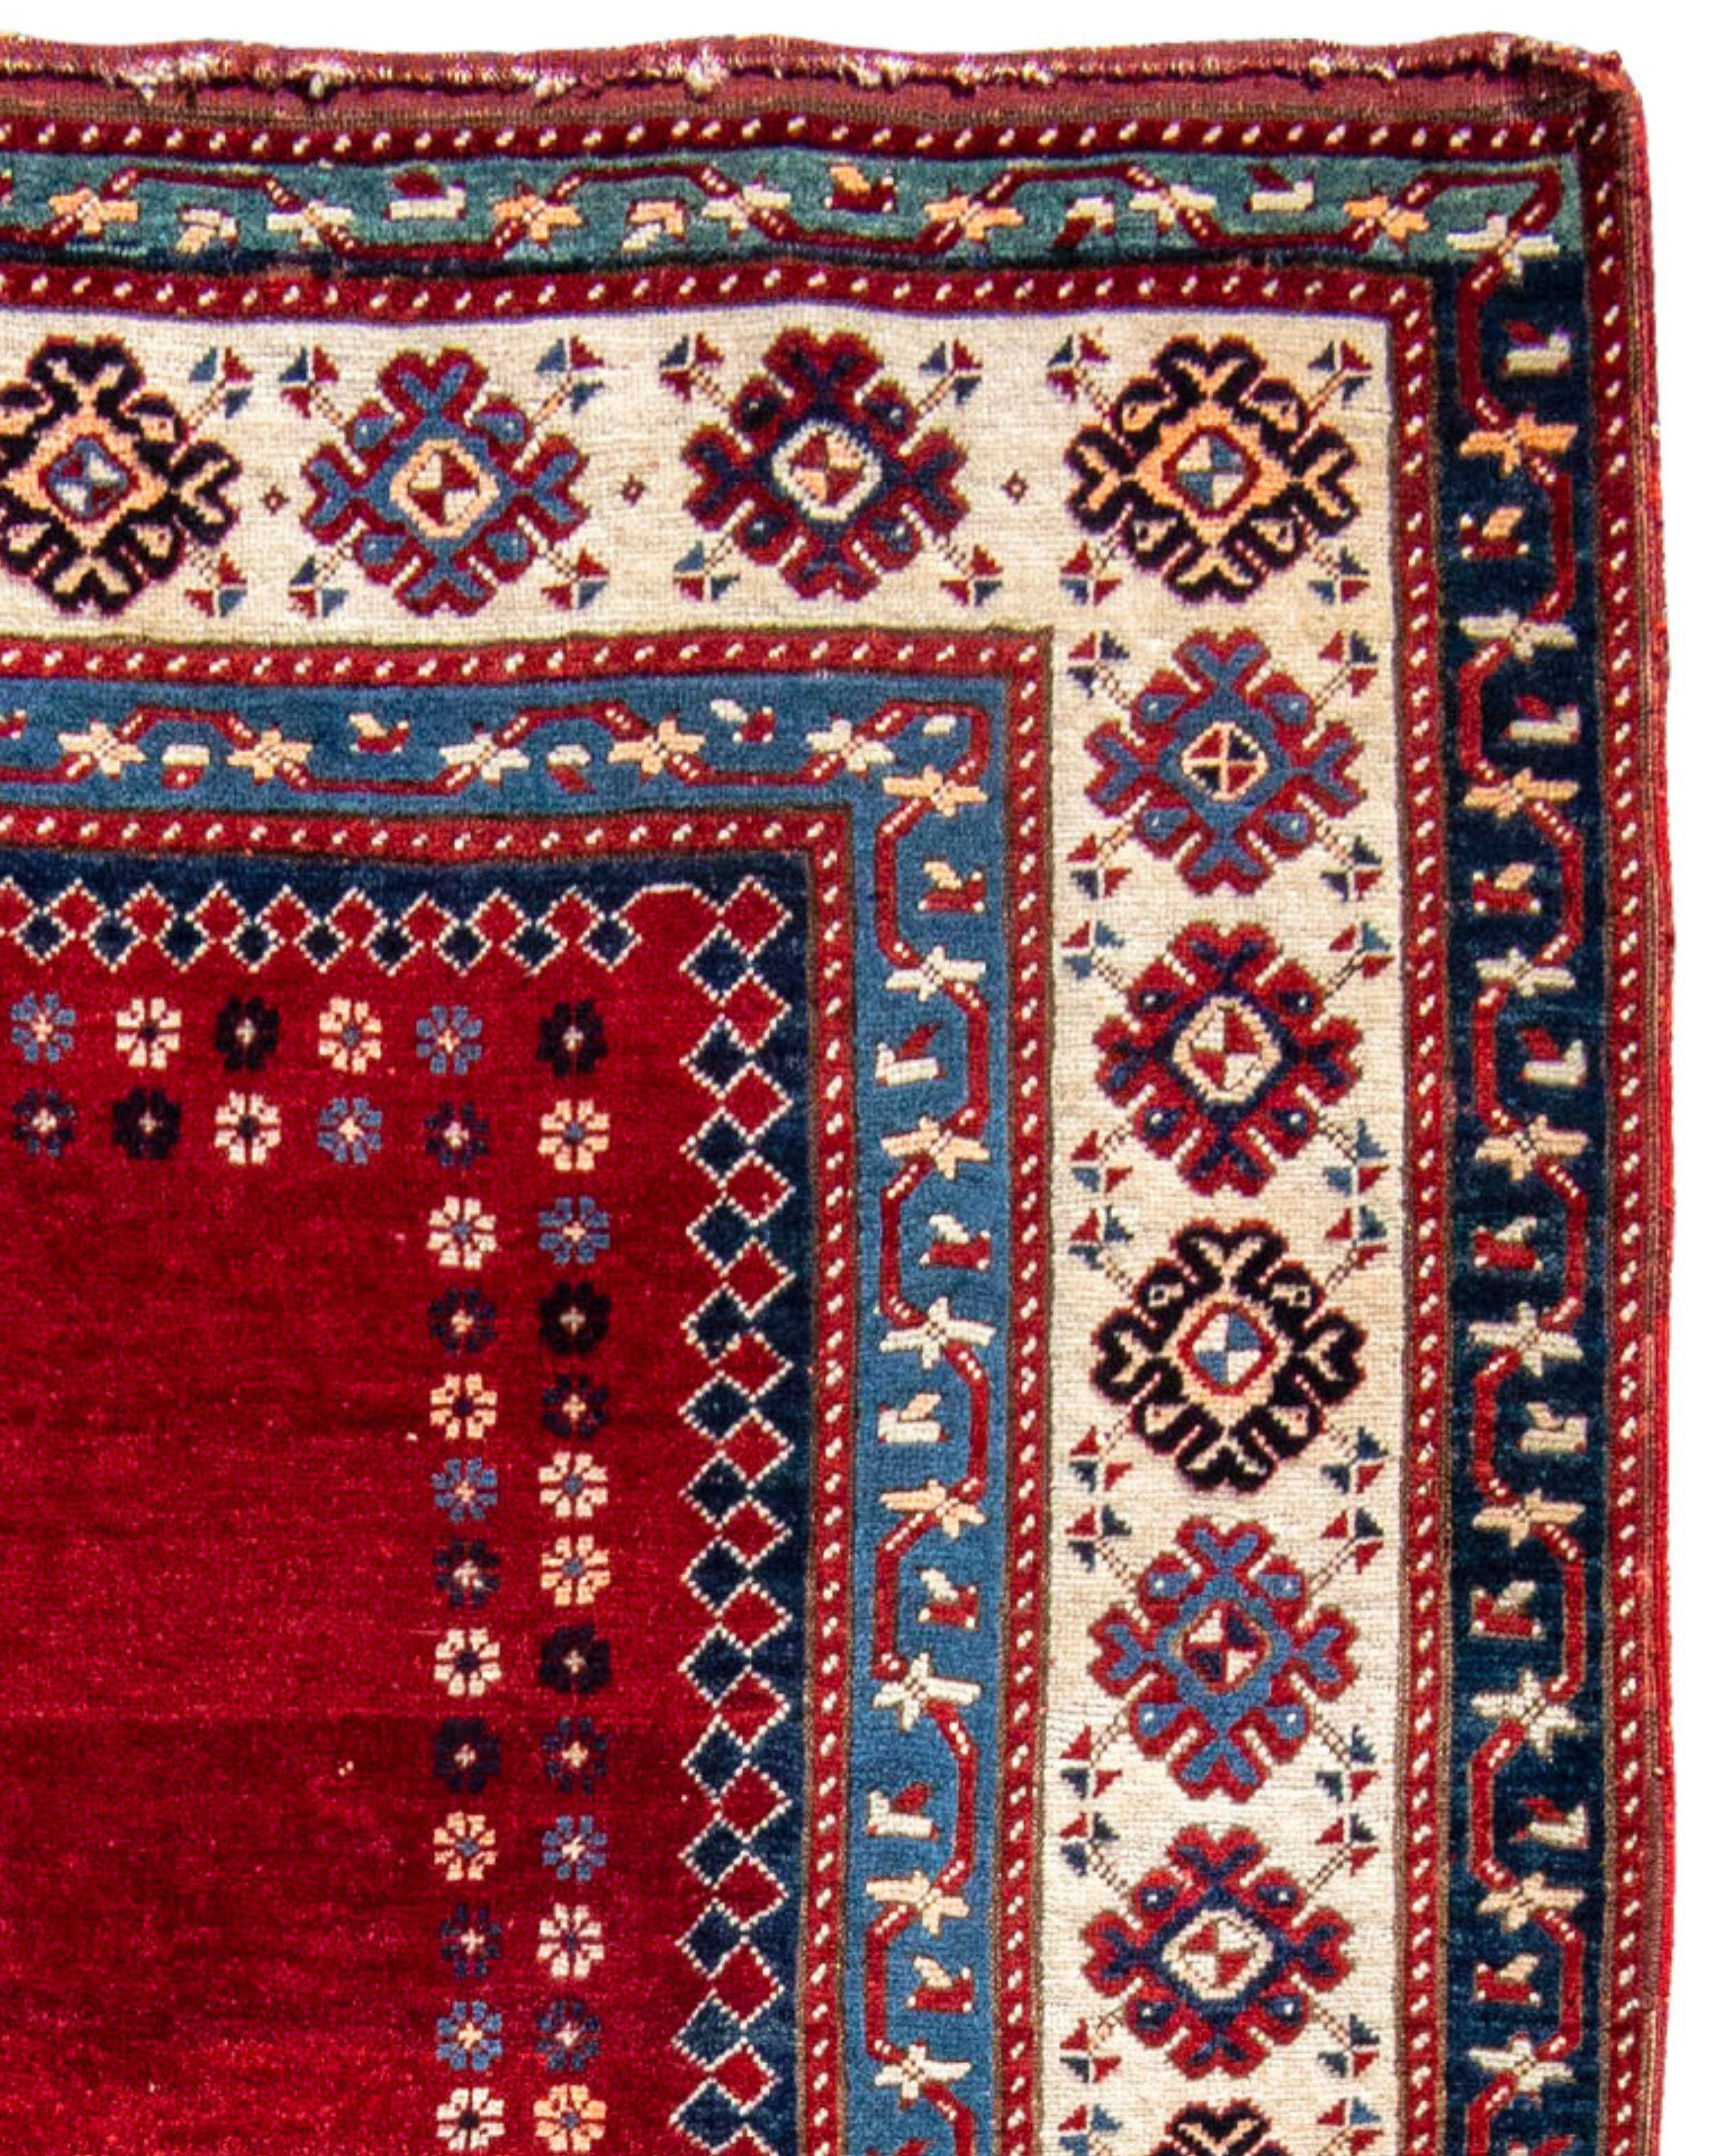 Tapis Kazak antique, fin du 19e siècle

Avec un champ rouge vide aux motifs multicolores en forme de flocons de neige flottant sur les bords, encadré par la bordure réciproque bleue/verte, ce tapis attire l'attention, plus que si un plus grand